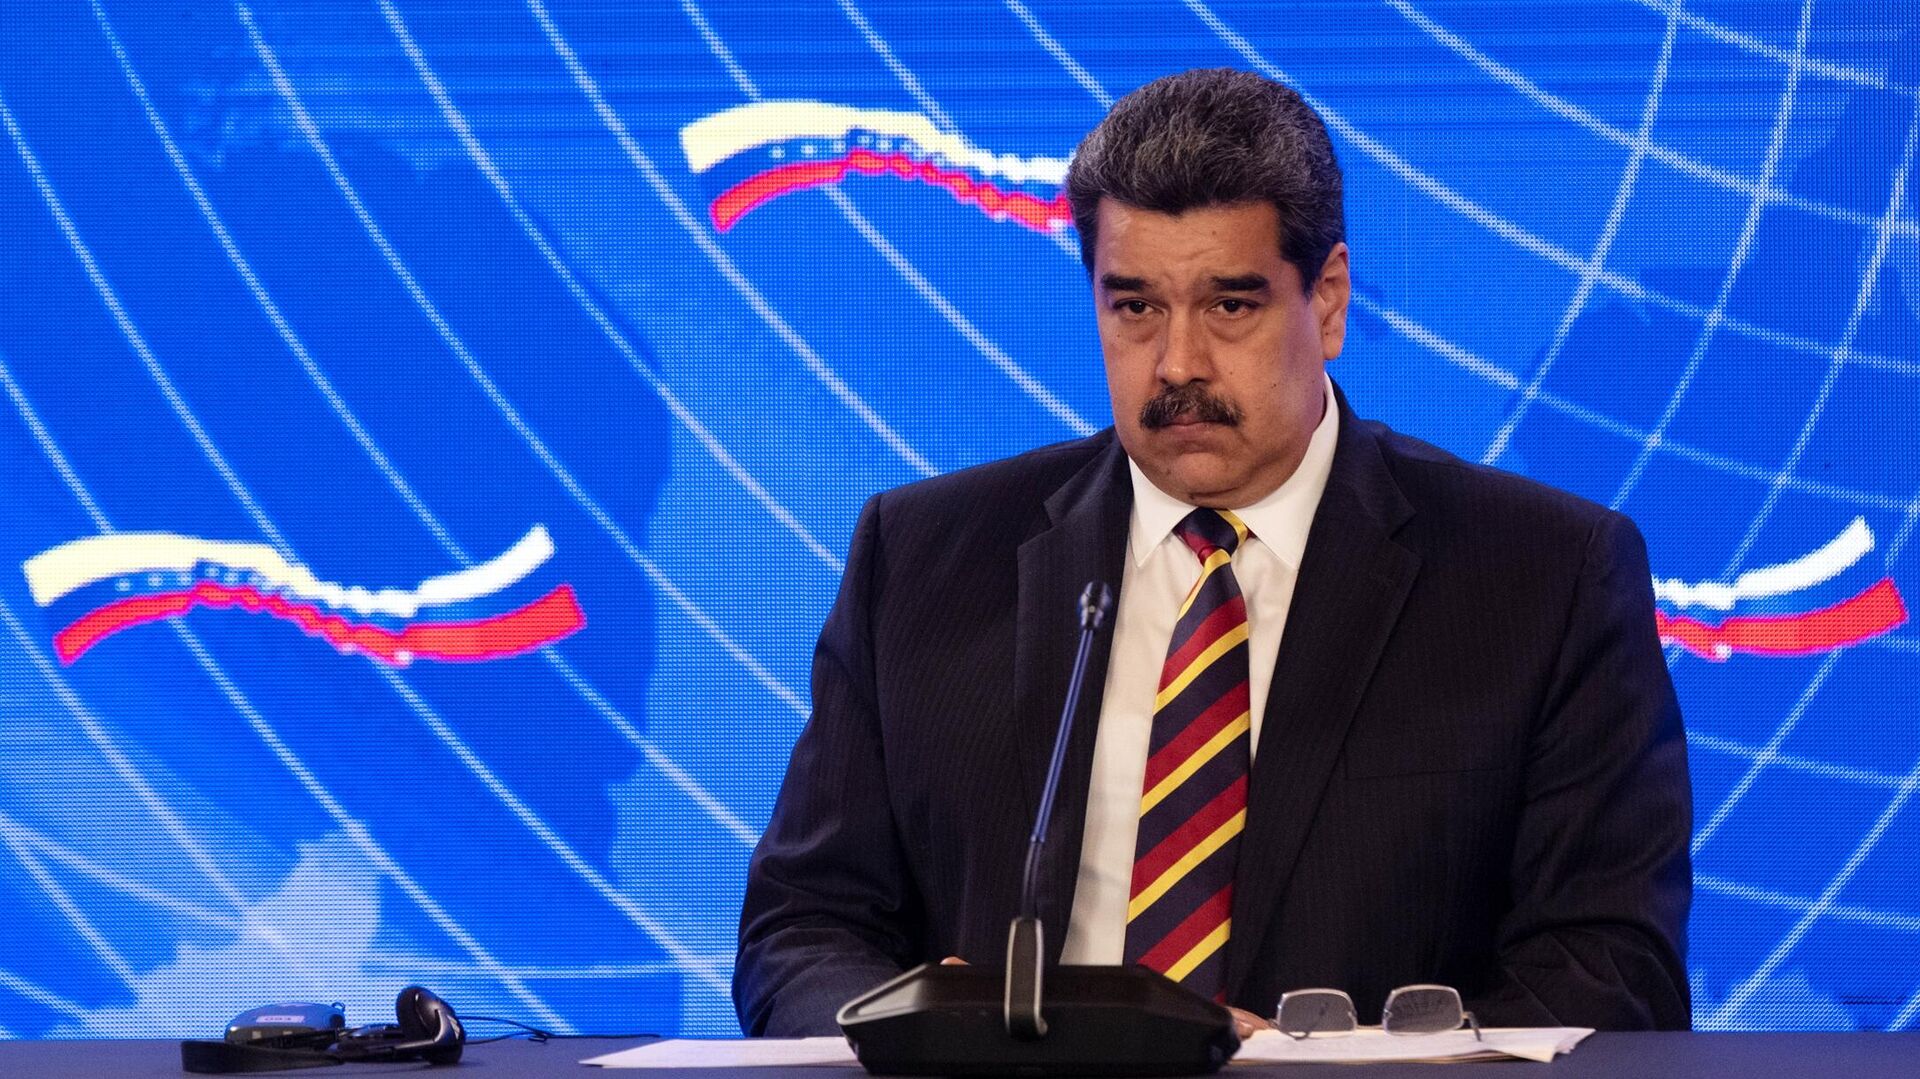 Мадуро заявил, что США планируют и инициируют военные конфликты в мире